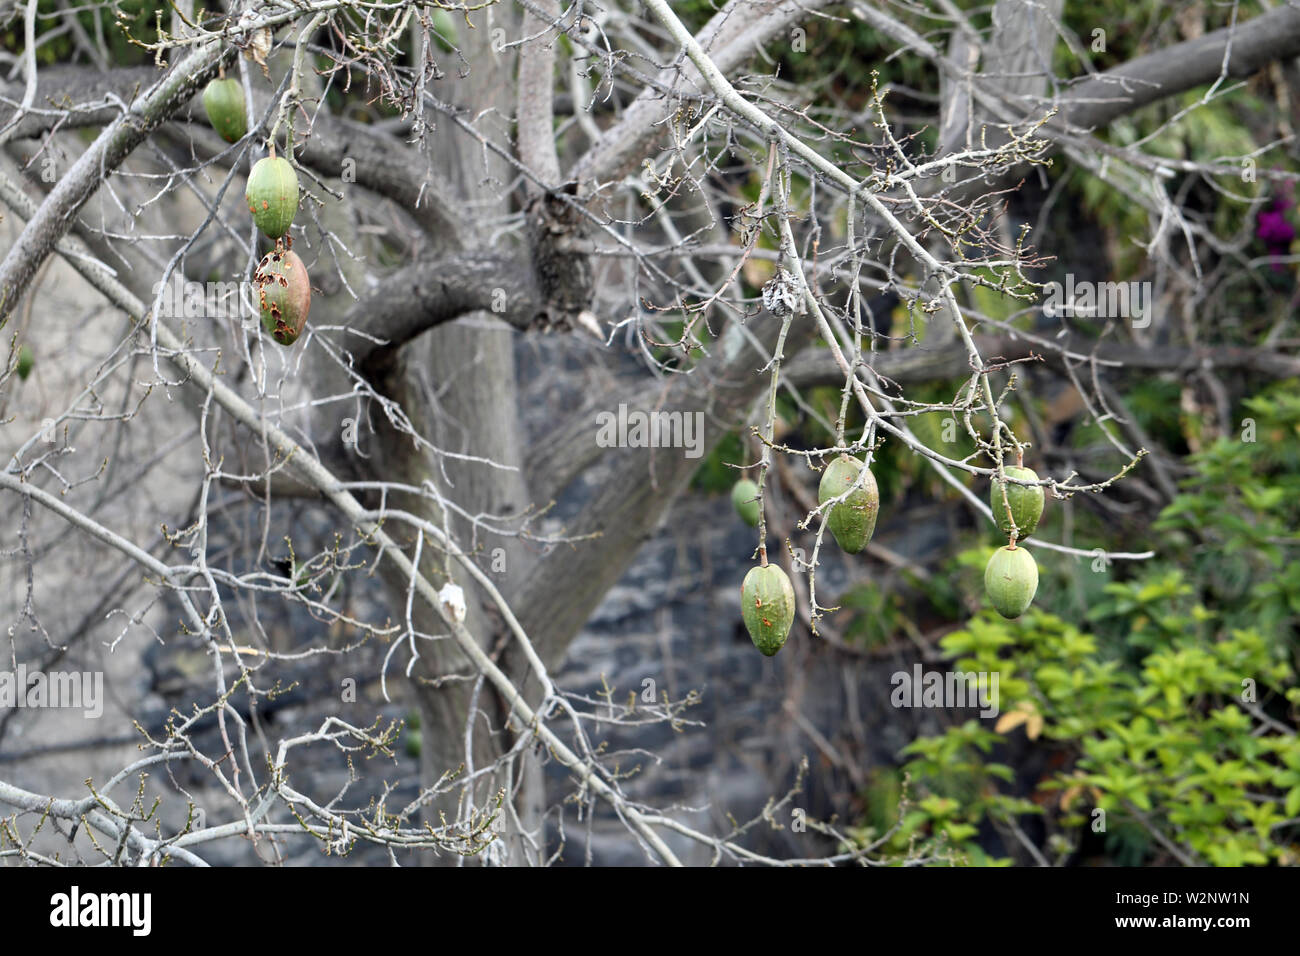 I rami degli alberi con abbondanza di frutti verdi appesi da loro. Fotografato in Isola di Madeira, Portogallo durante una giornata di primavera. Immagine a colori. Foto Stock